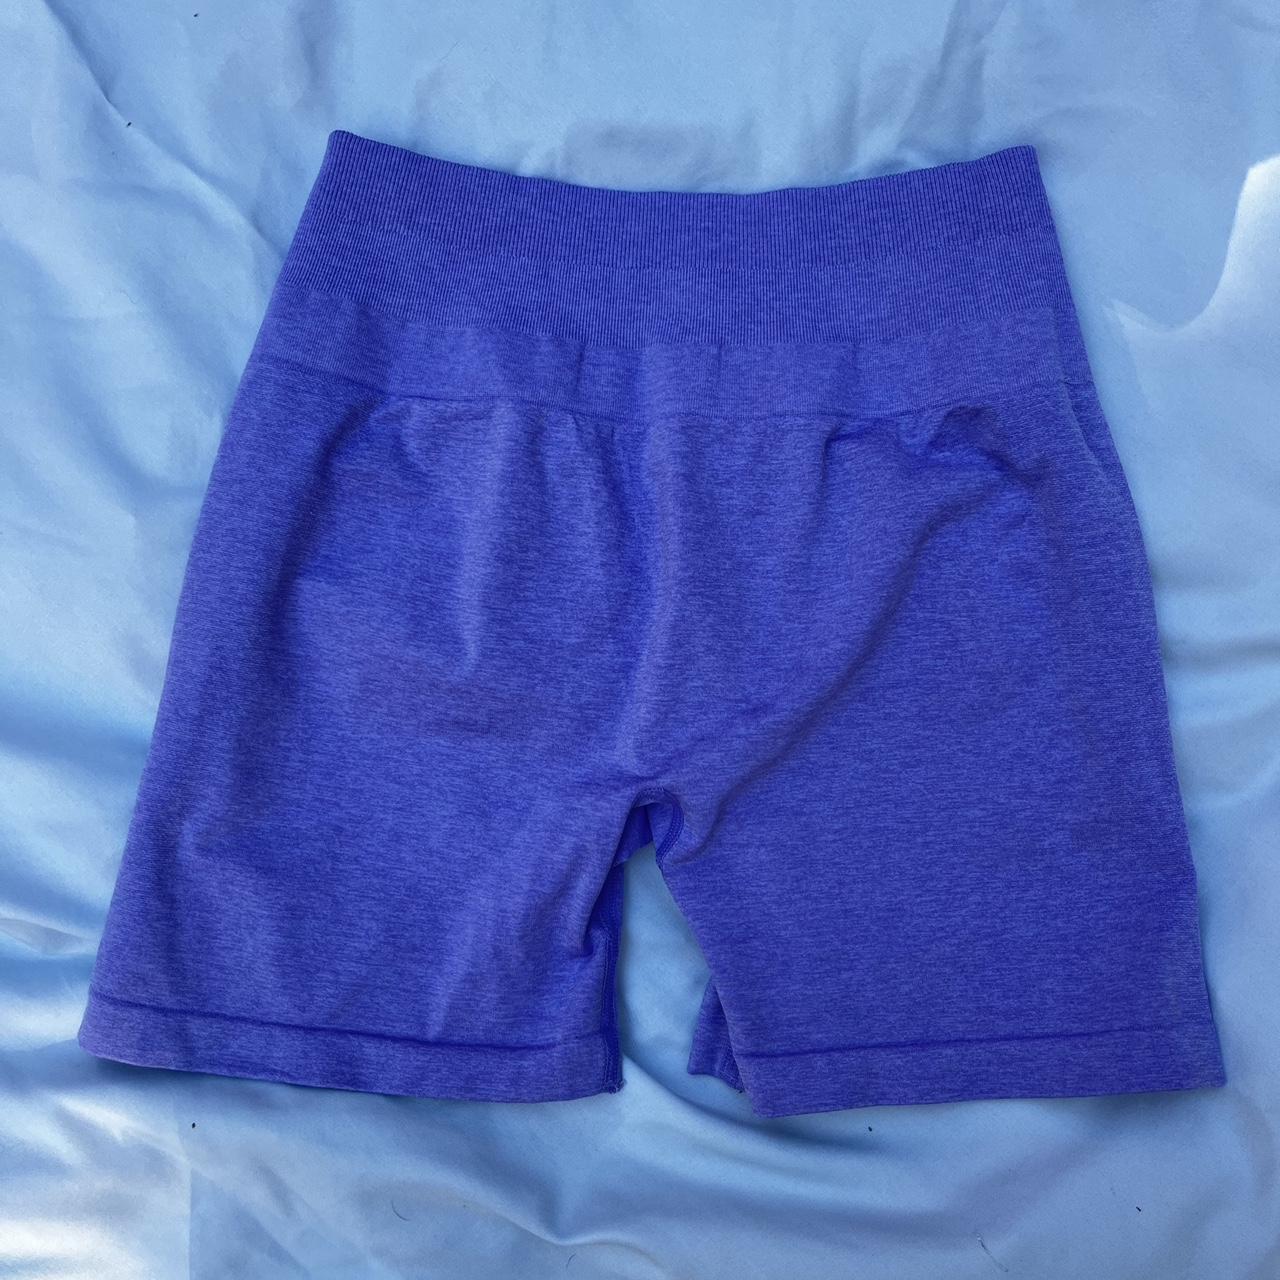 Celer purple workout shorts size M In great - Depop